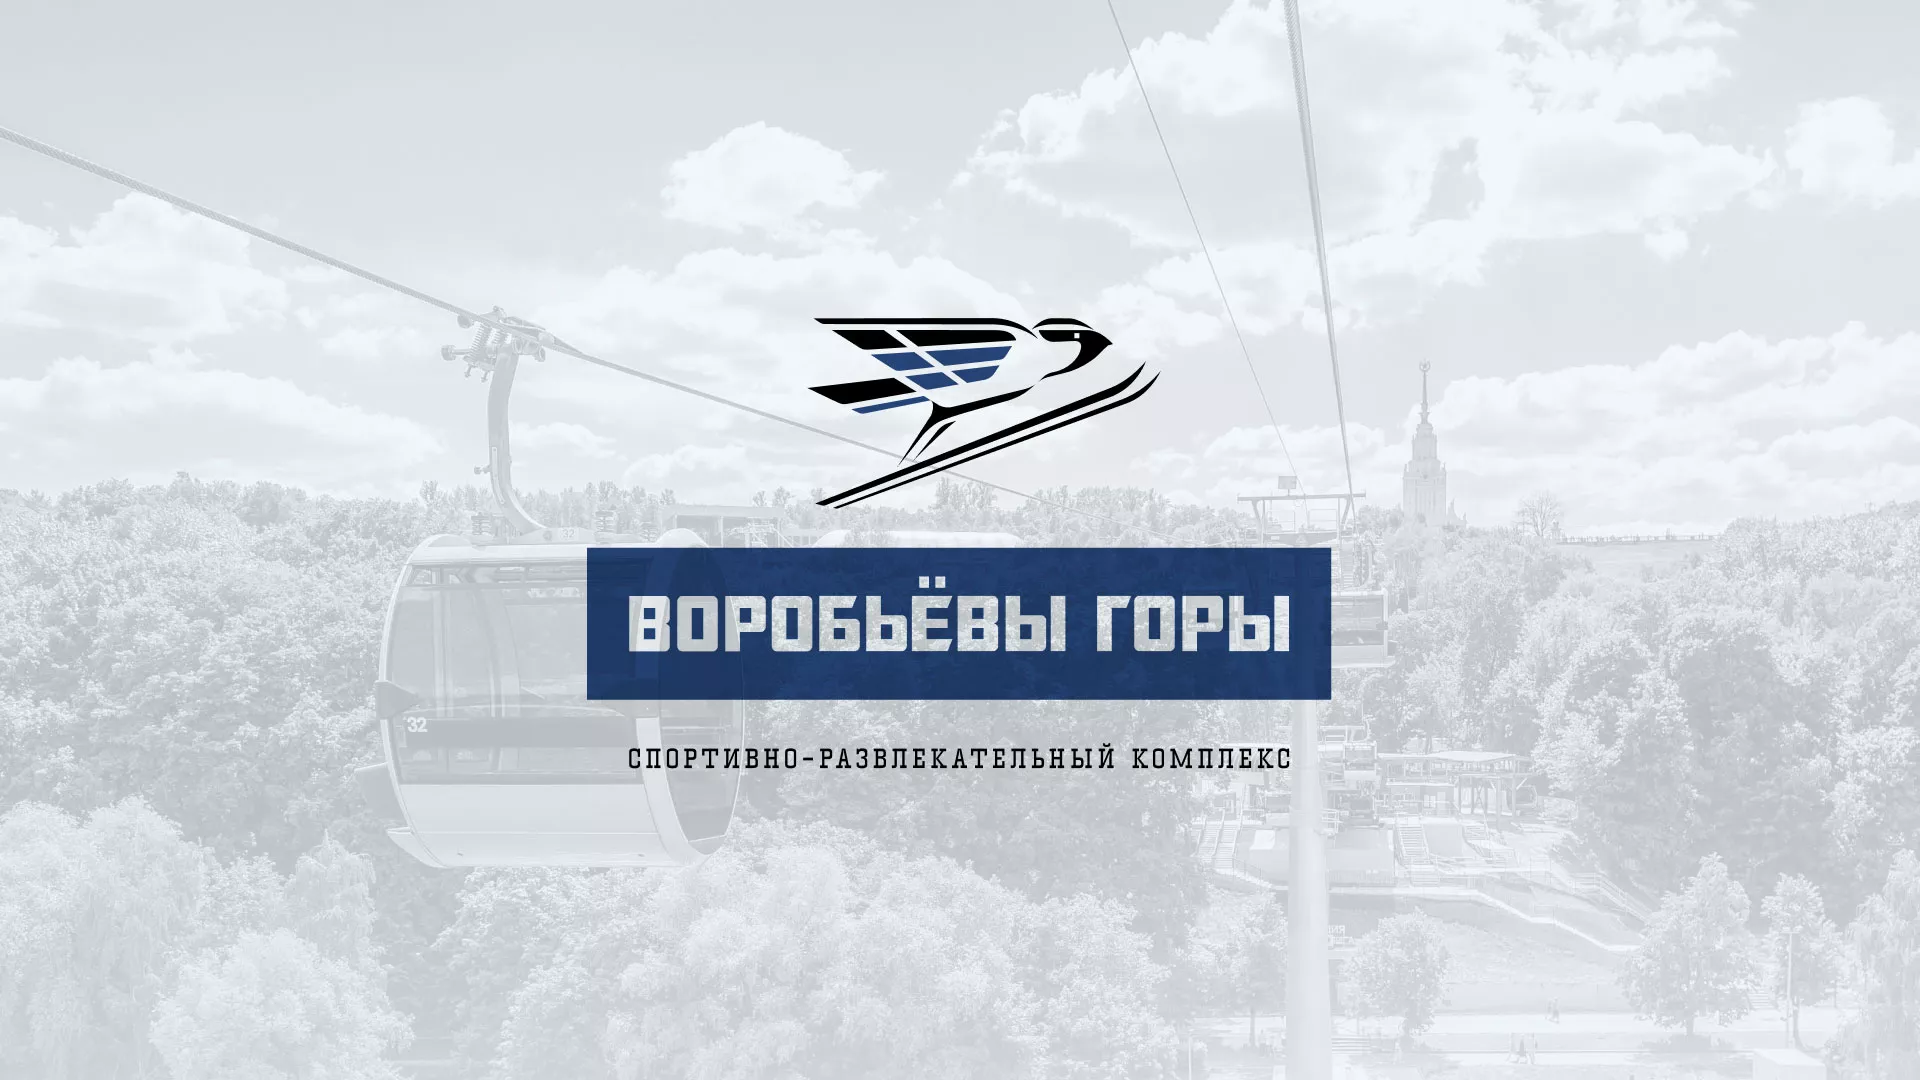 Разработка сайта в Белореченске для спортивно-развлекательного комплекса «Воробьёвы горы»